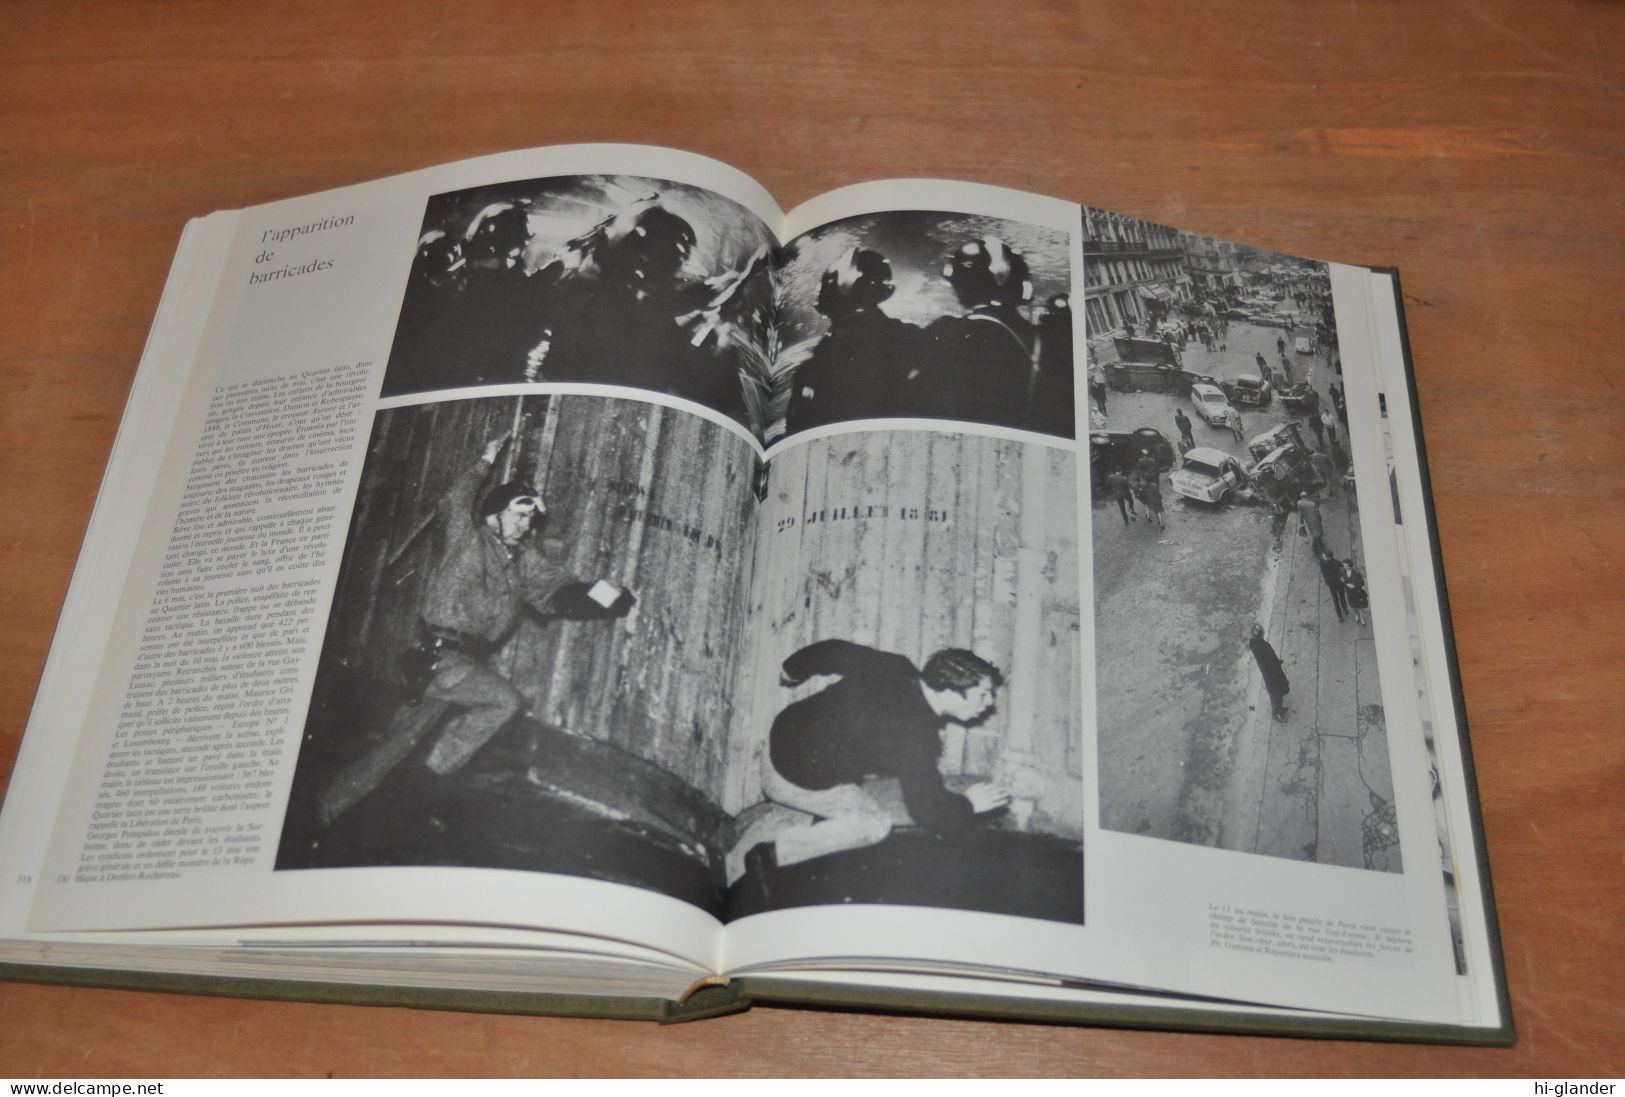 charles de gaulle  1890/1970 beau livre 650 photos